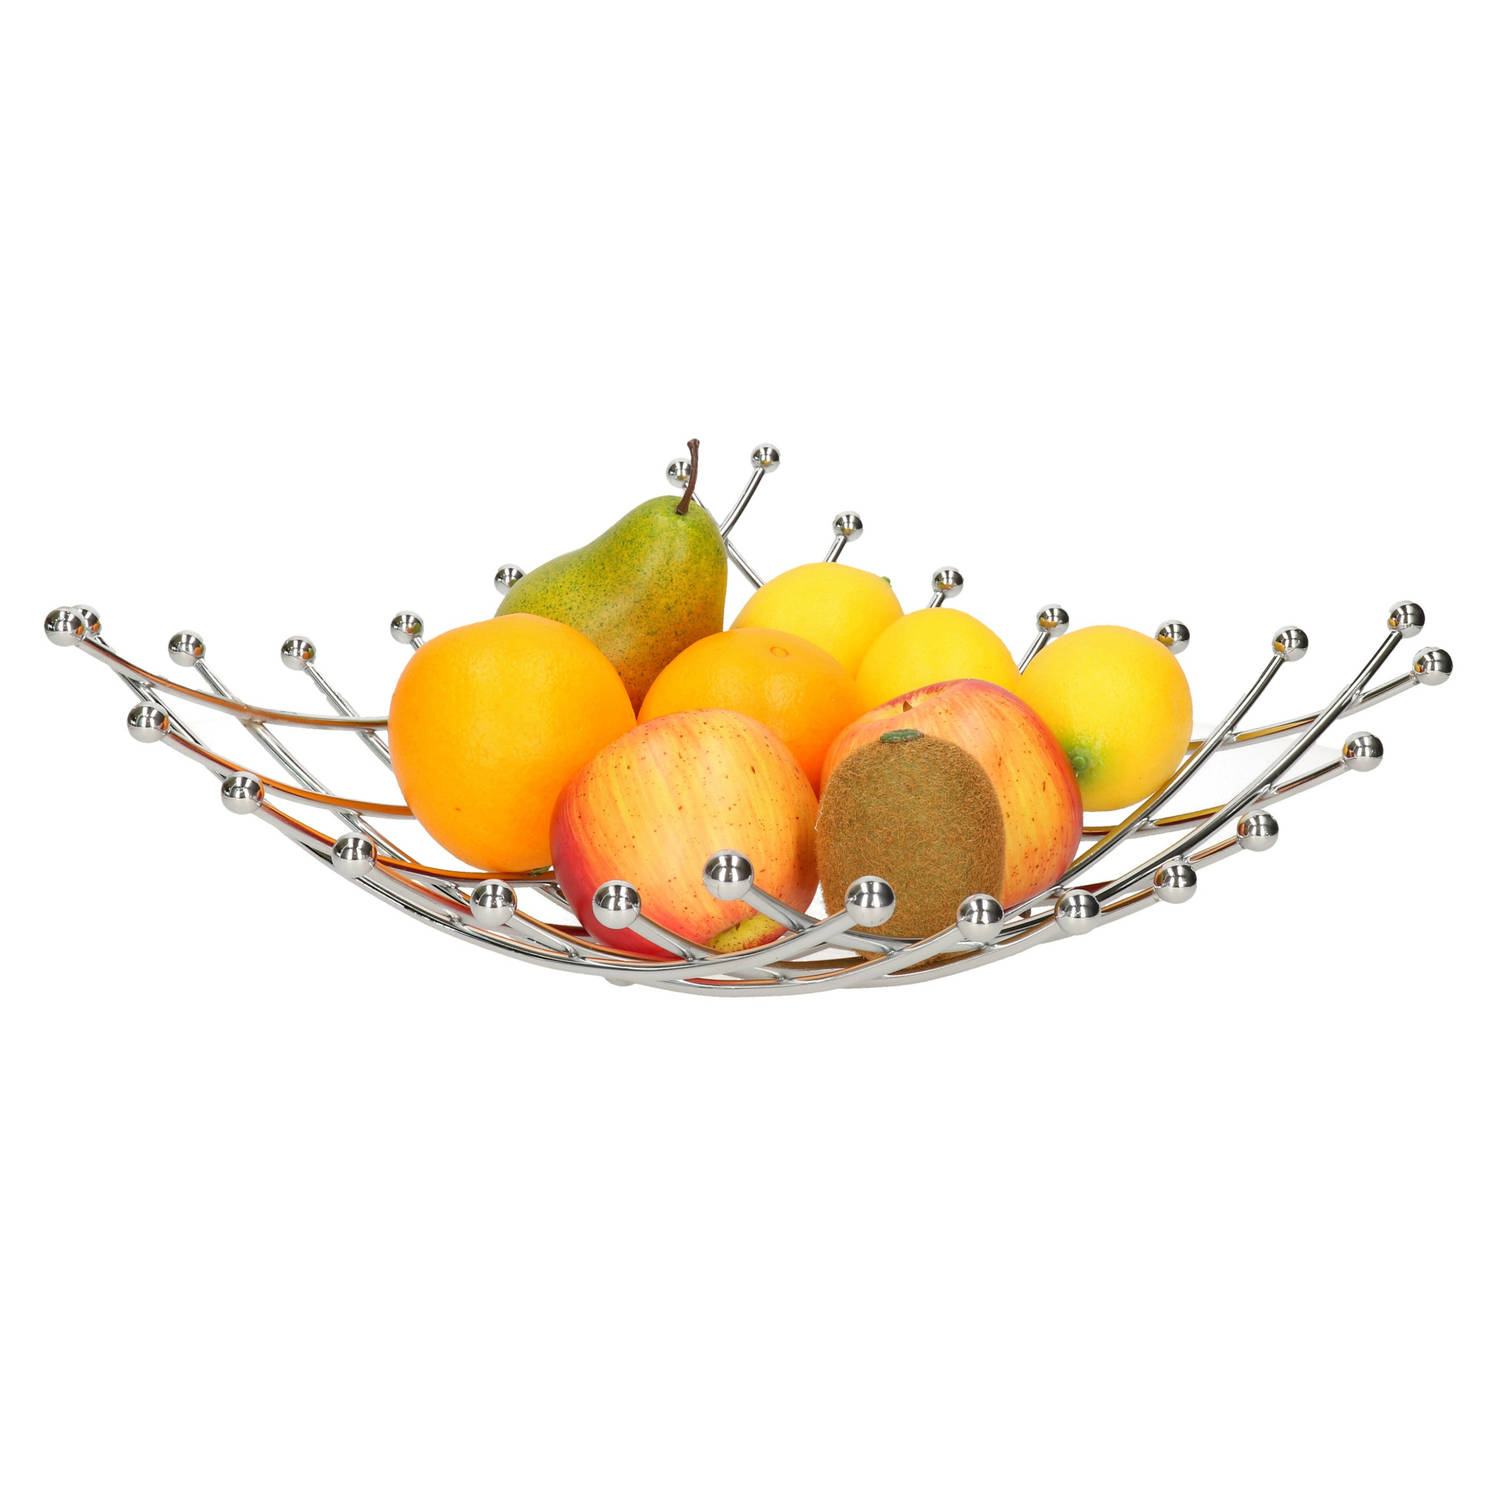 Fruitmand/fruitschaal chroom vierkant 32 x 32 cm - Fruitschalen